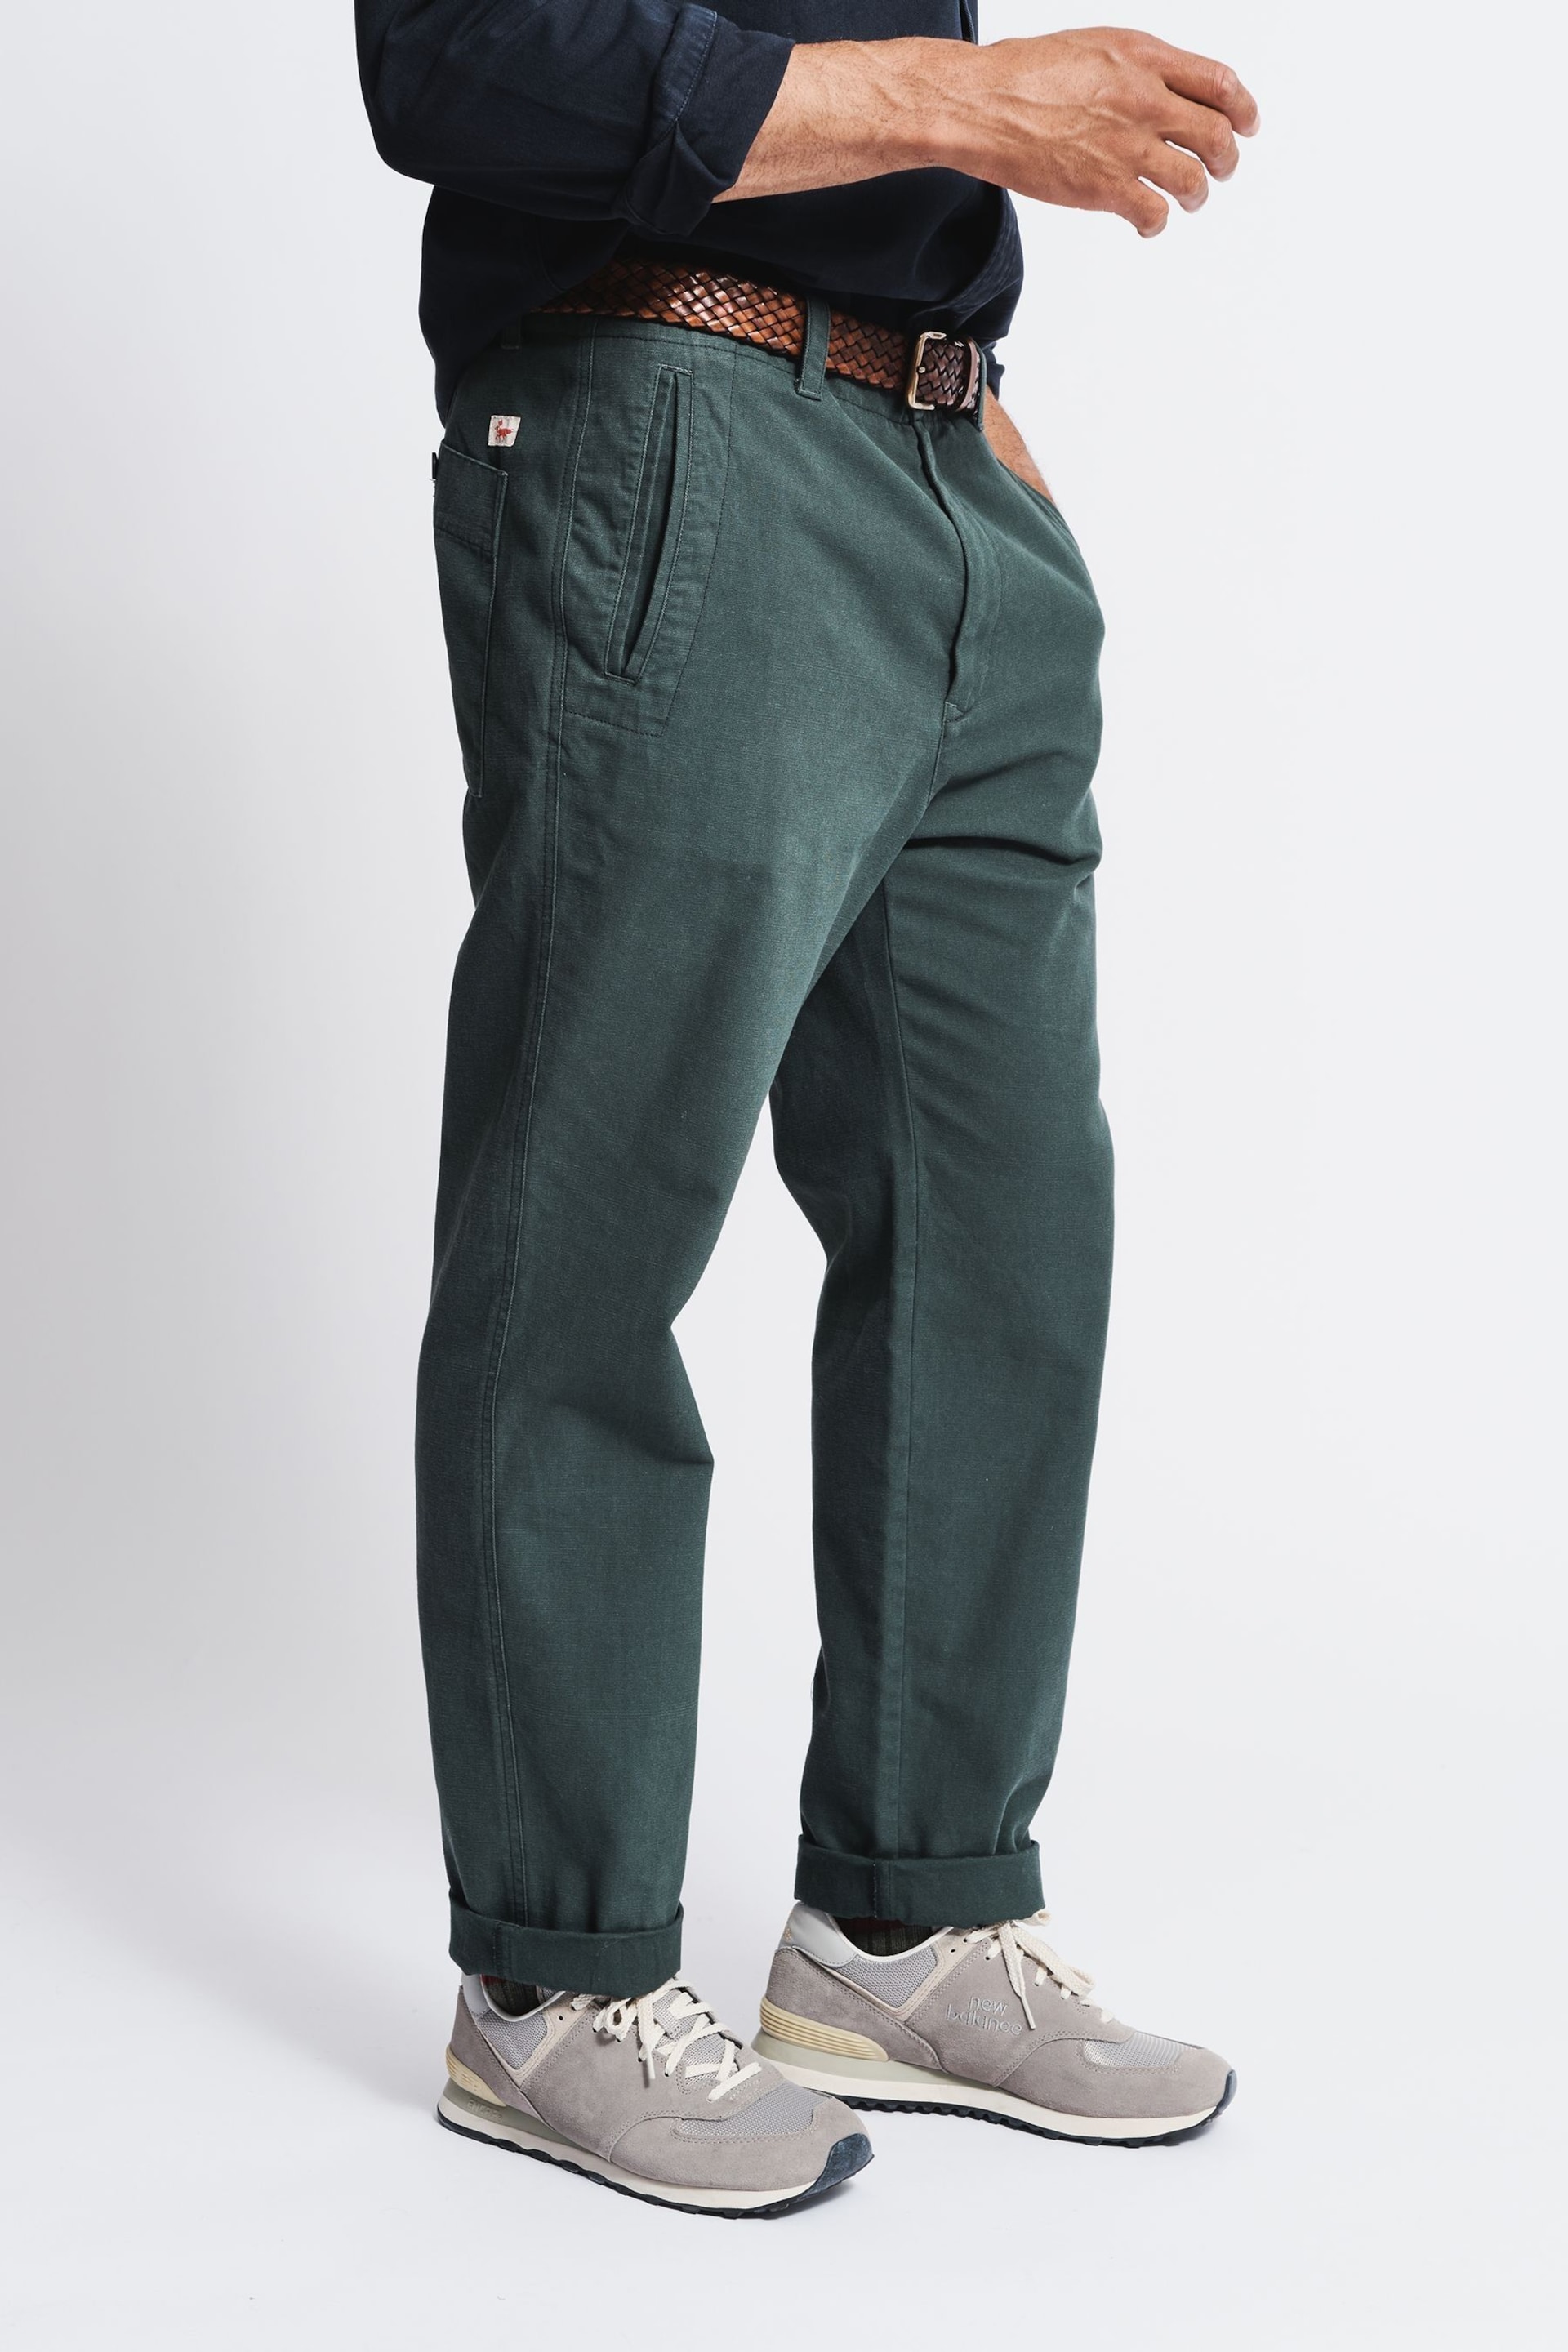 Aubin Green Nettleton Trousers - Image 3 of 6